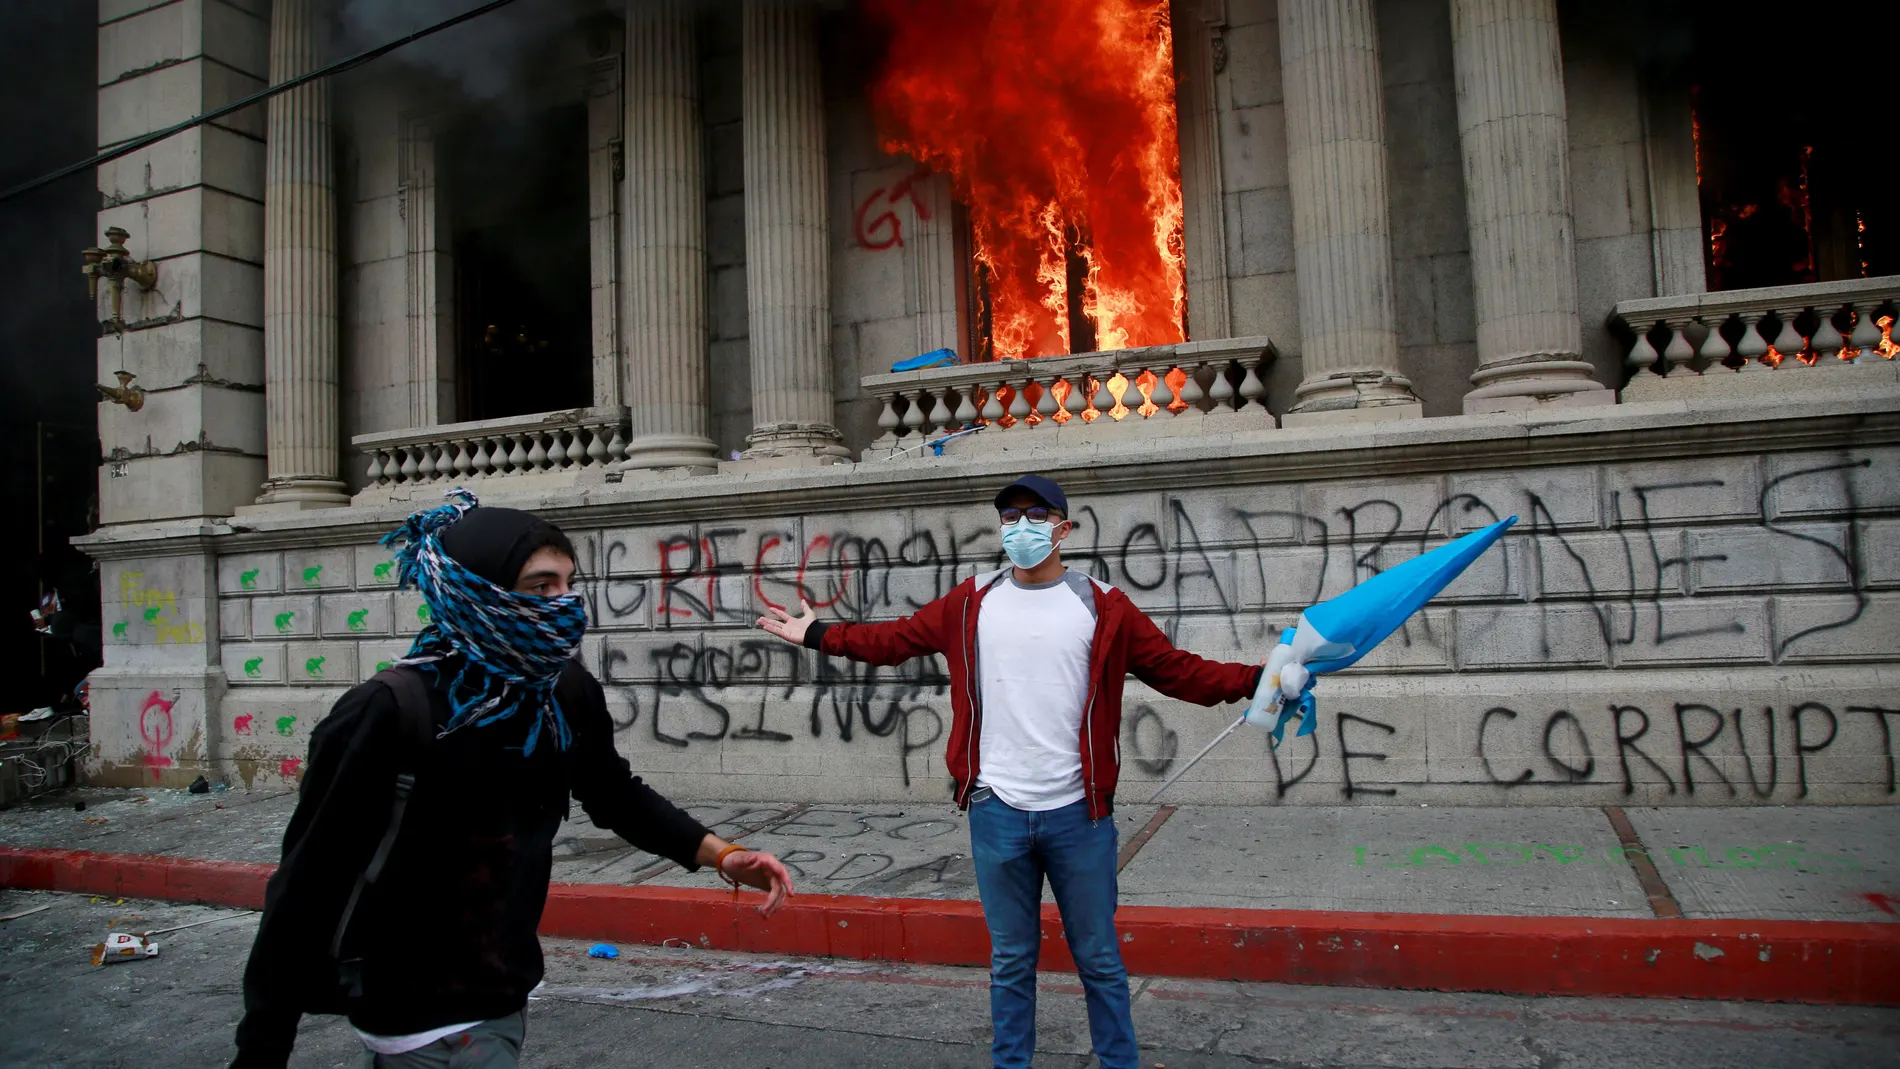 Manifestantes queman parte del Congreso de Guatemala en una protesta en contra de las medidas del gobierno del presidente del país, Alejandro Giammattei, el 21 de noviembre de 2020